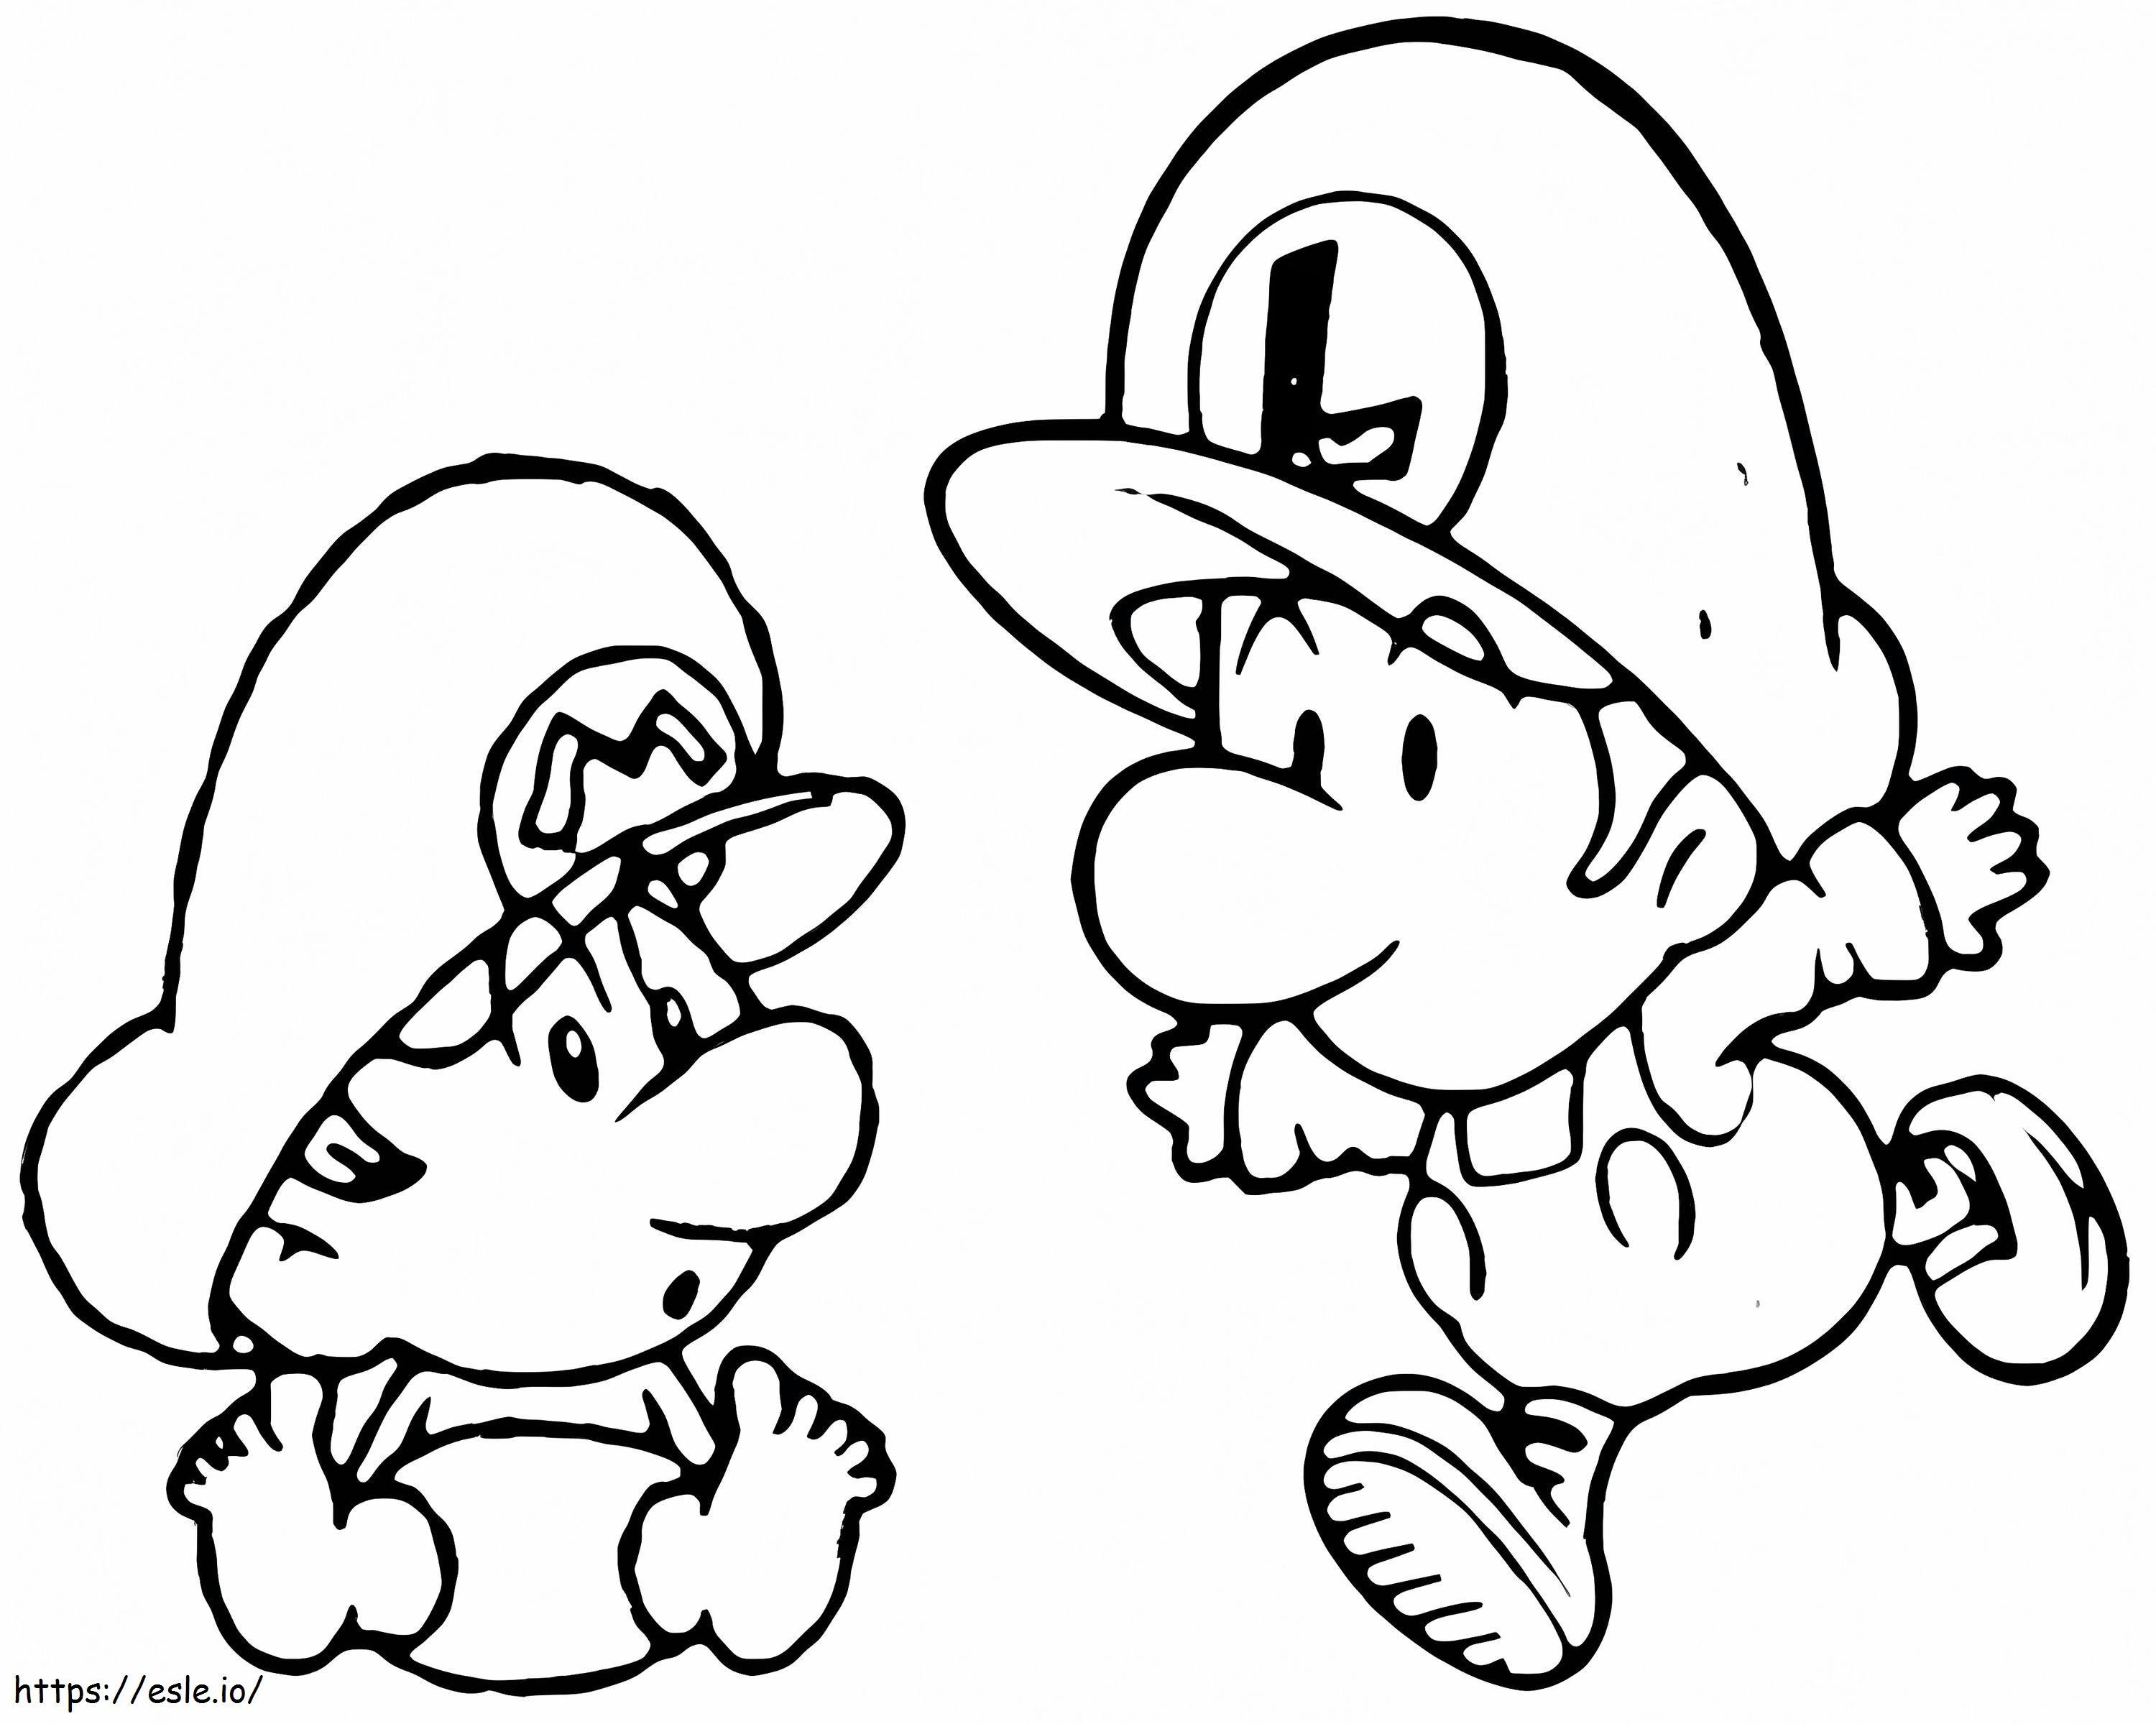 Baby Luigi e Baby Mario da colorare